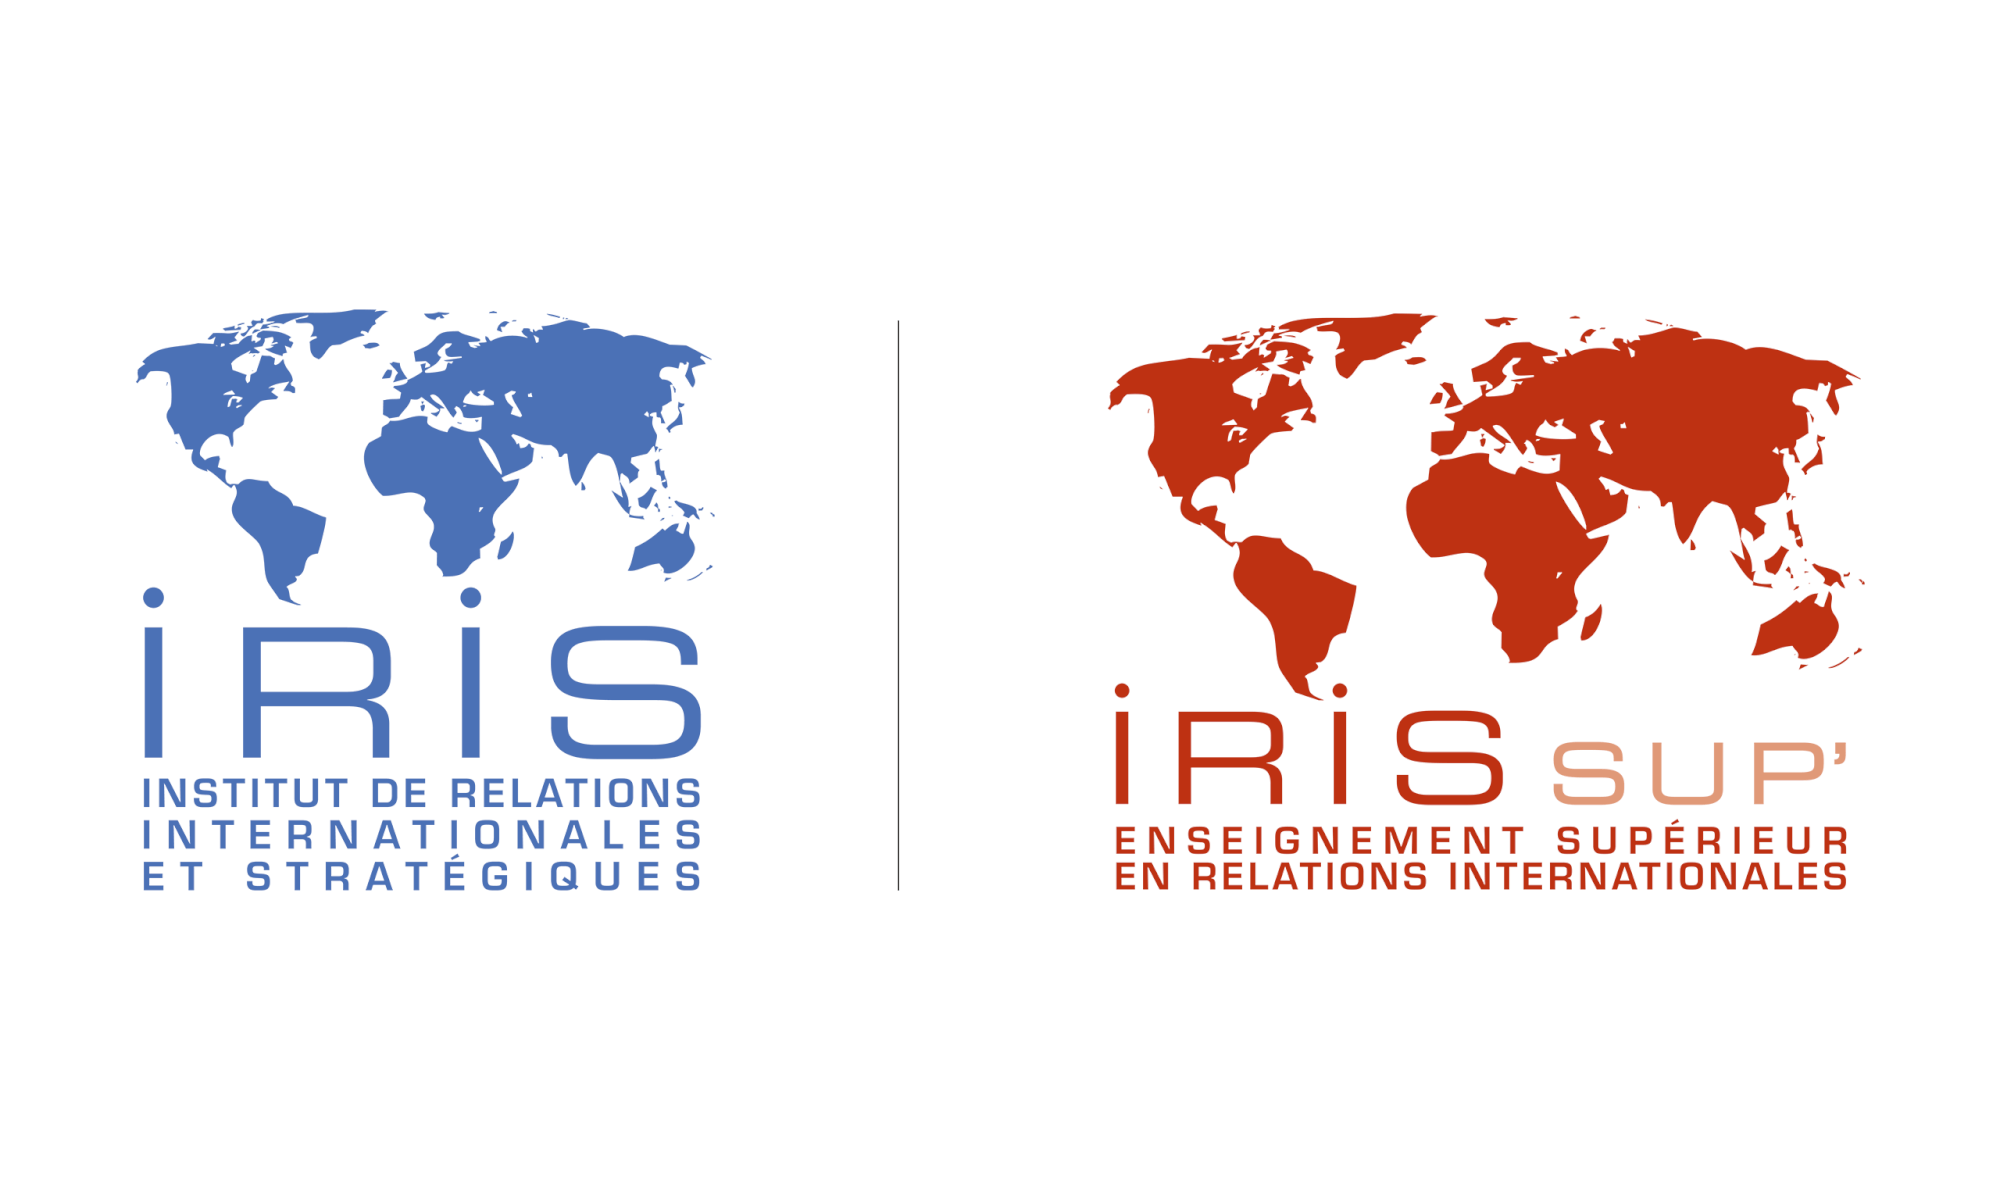 iris-institut-de-relations-internationales-strategiques